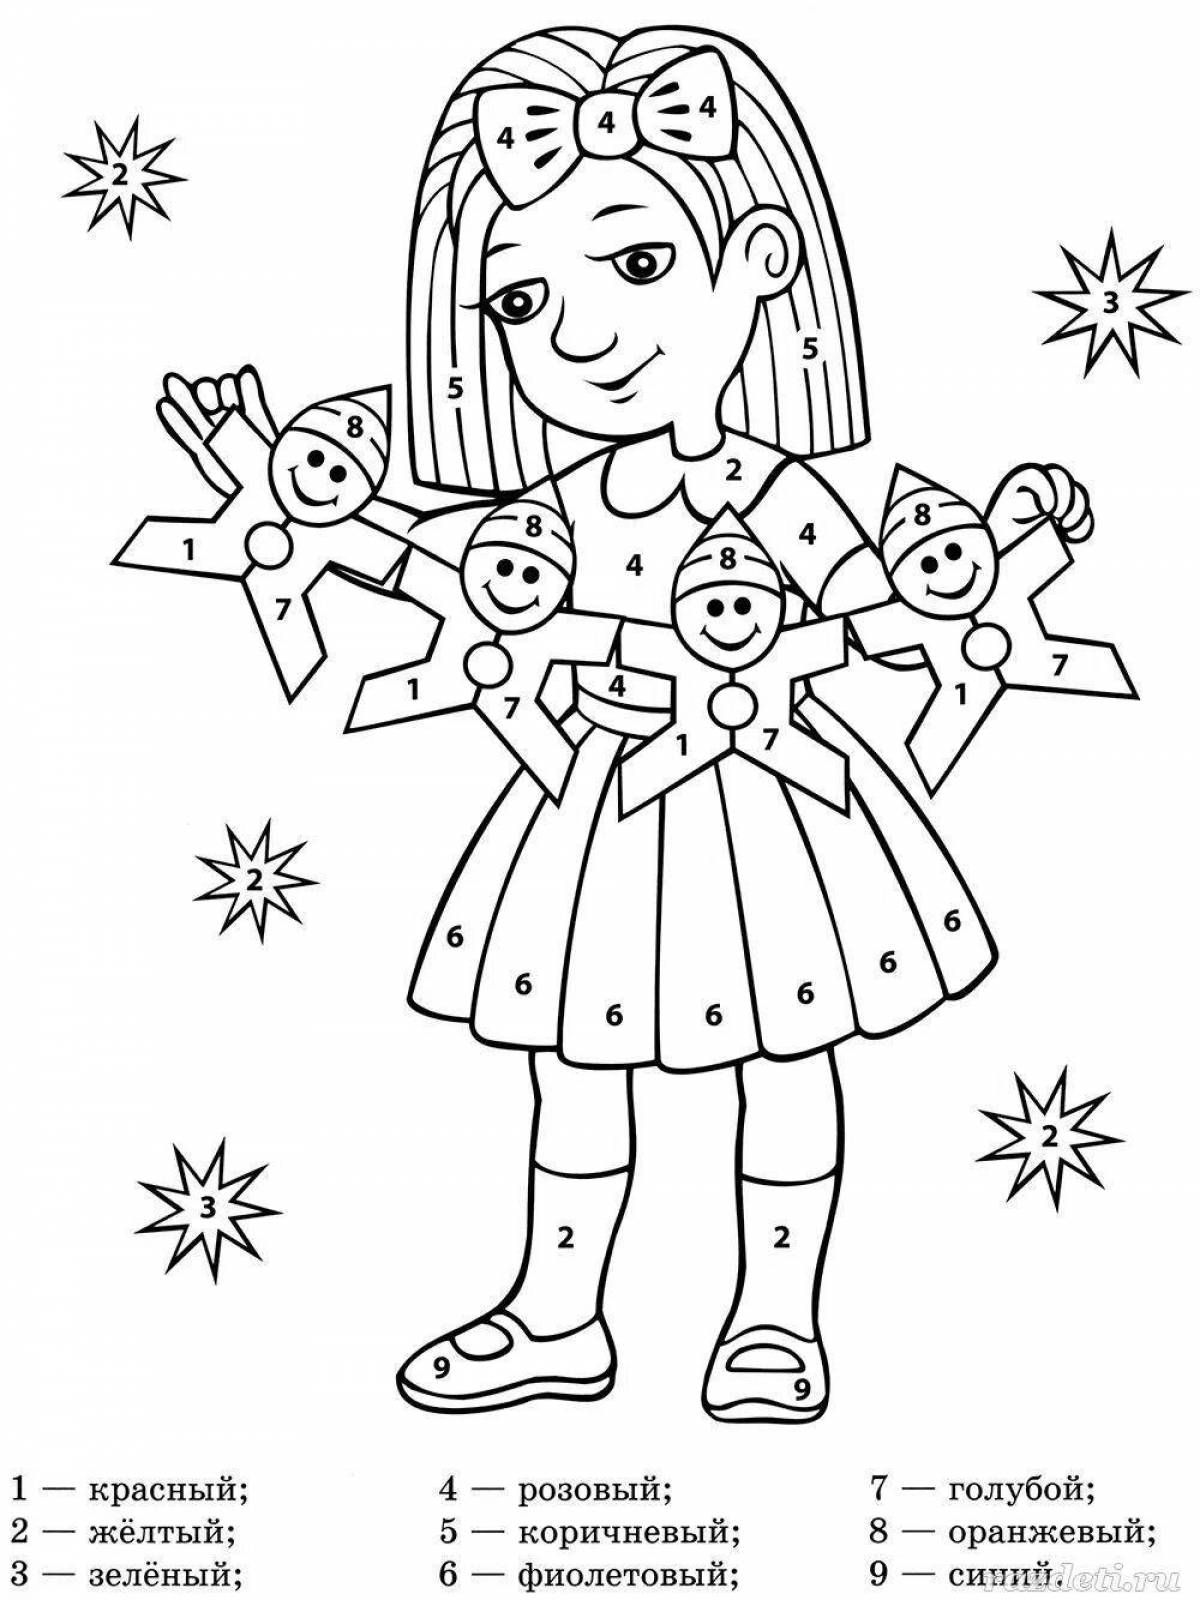 Сладкая кукла-раскраска для детей 6-7 лет